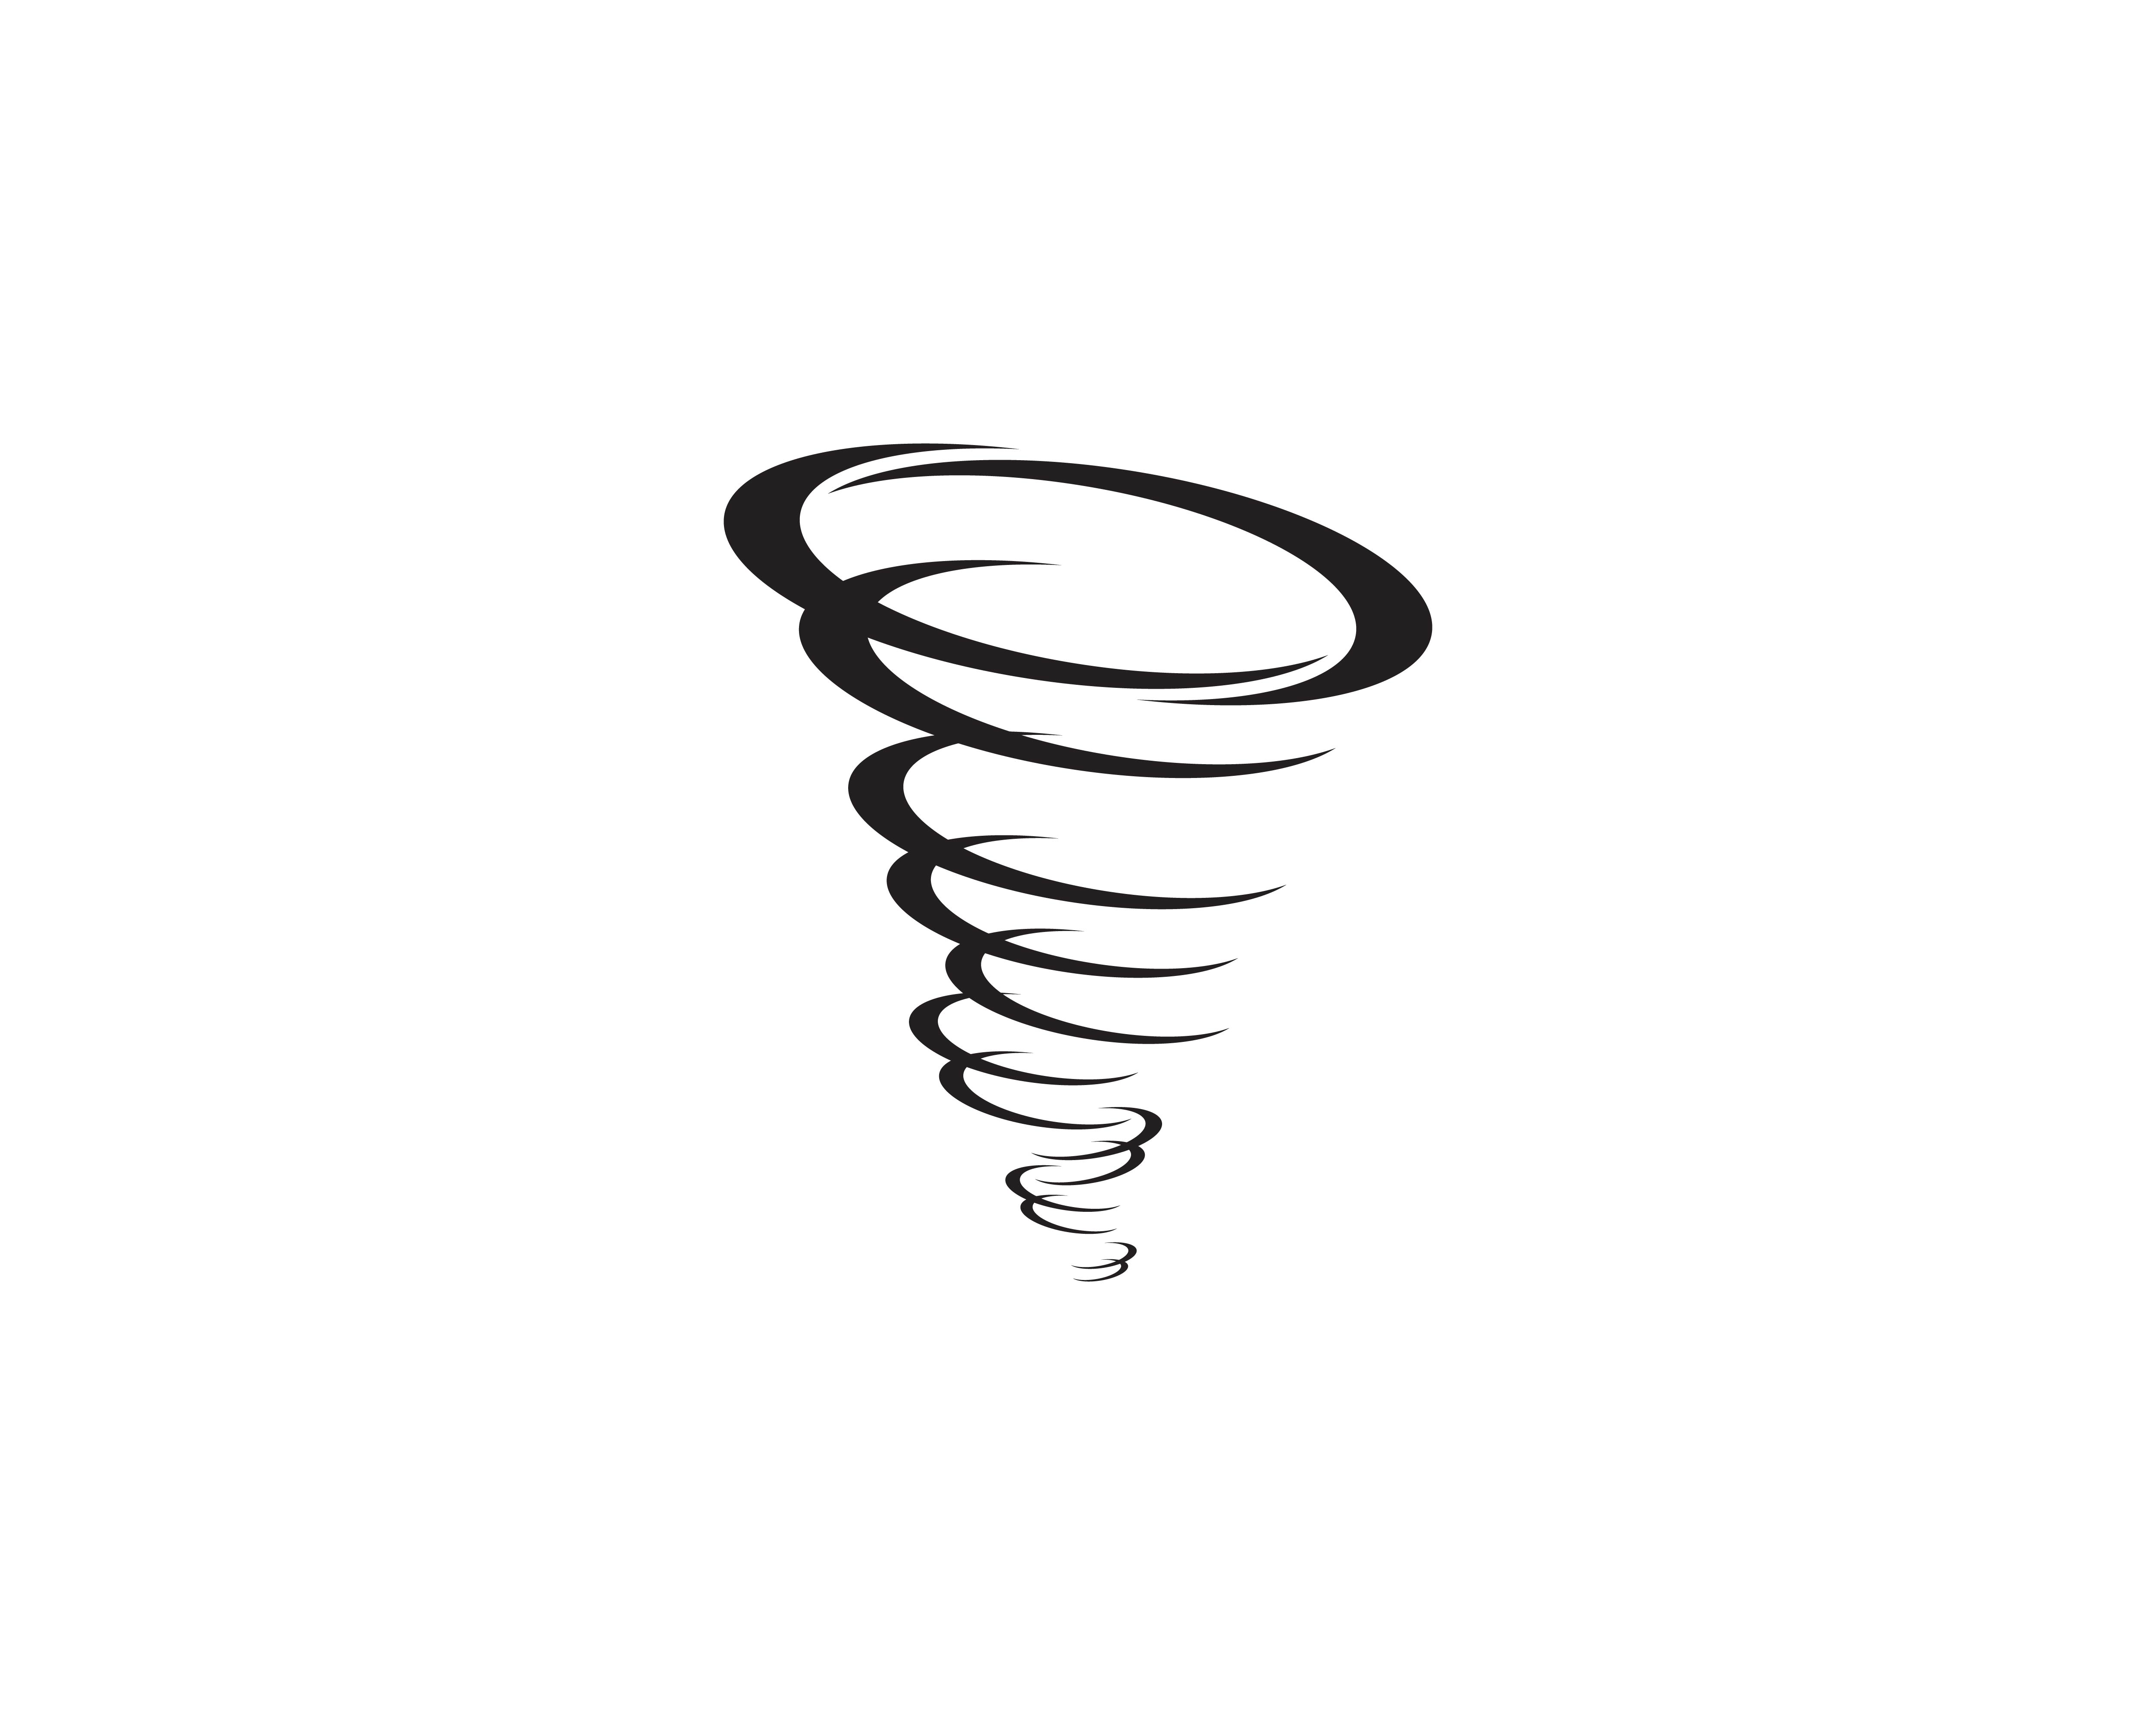 Download Tornado symbol vector illustration - Download Free Vectors ...